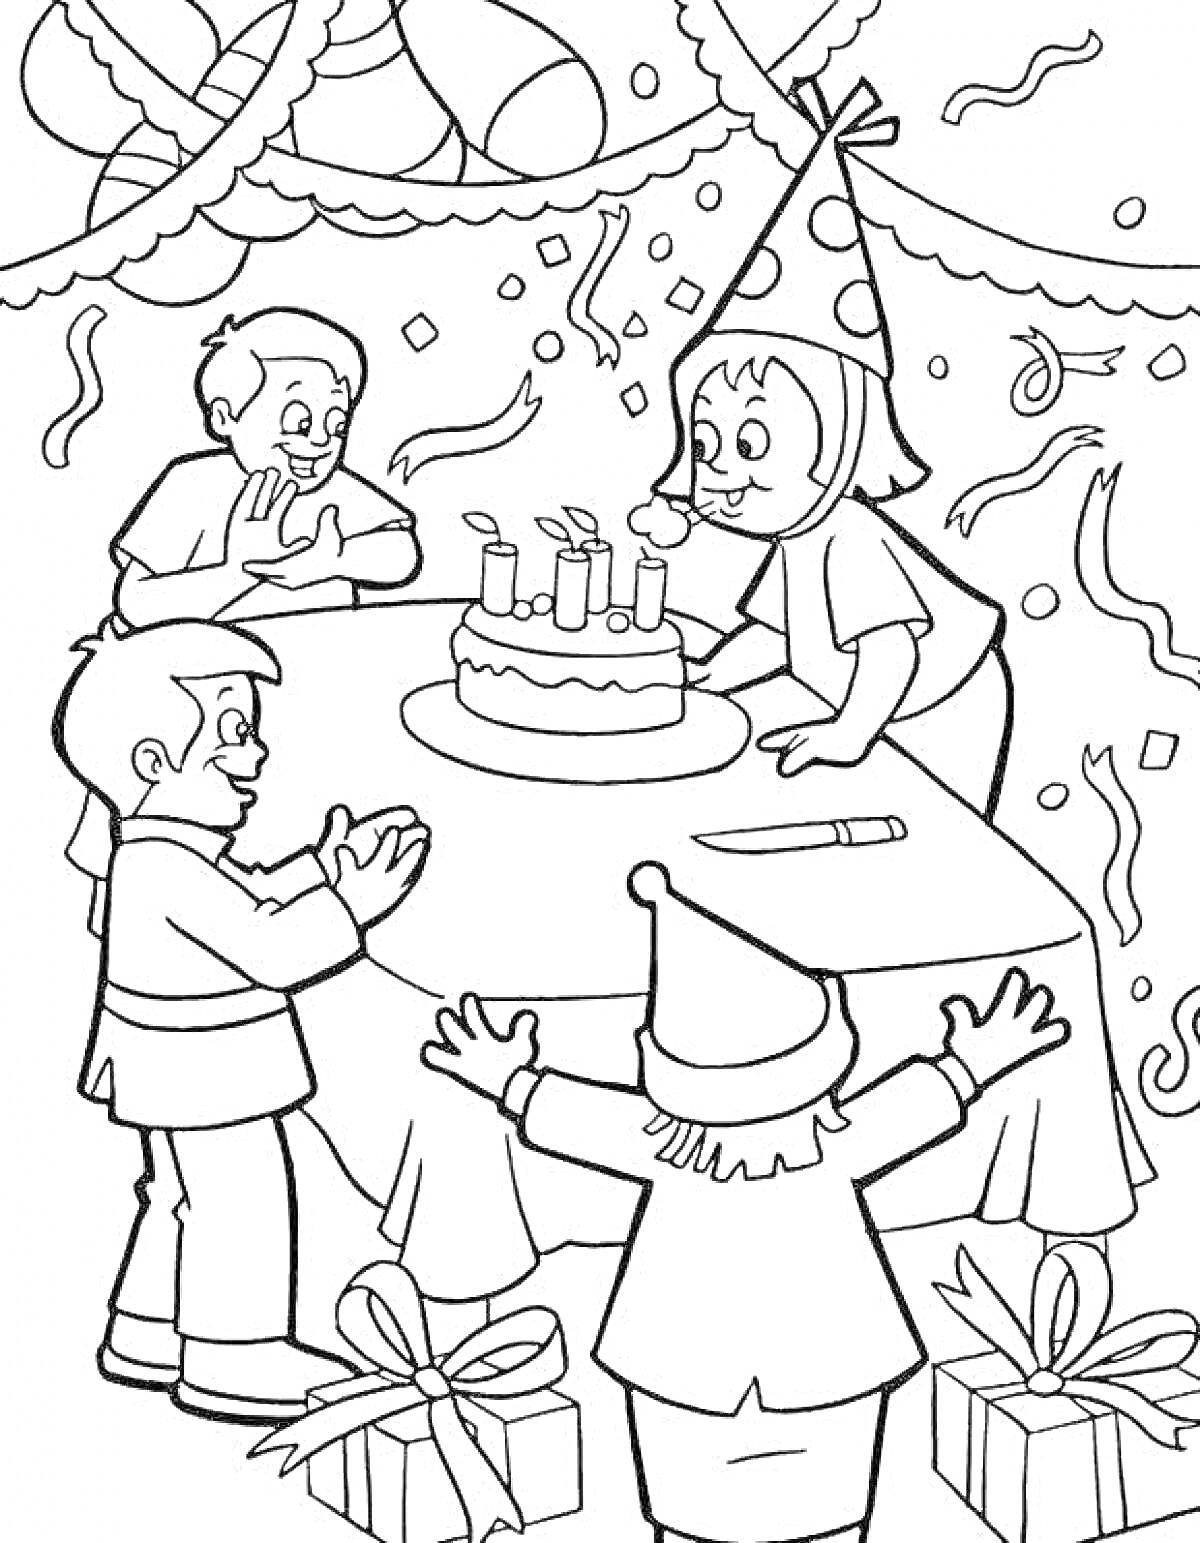 Раскраска Детский день рождения с тортом, свечами, подарками и детьми в колпаках